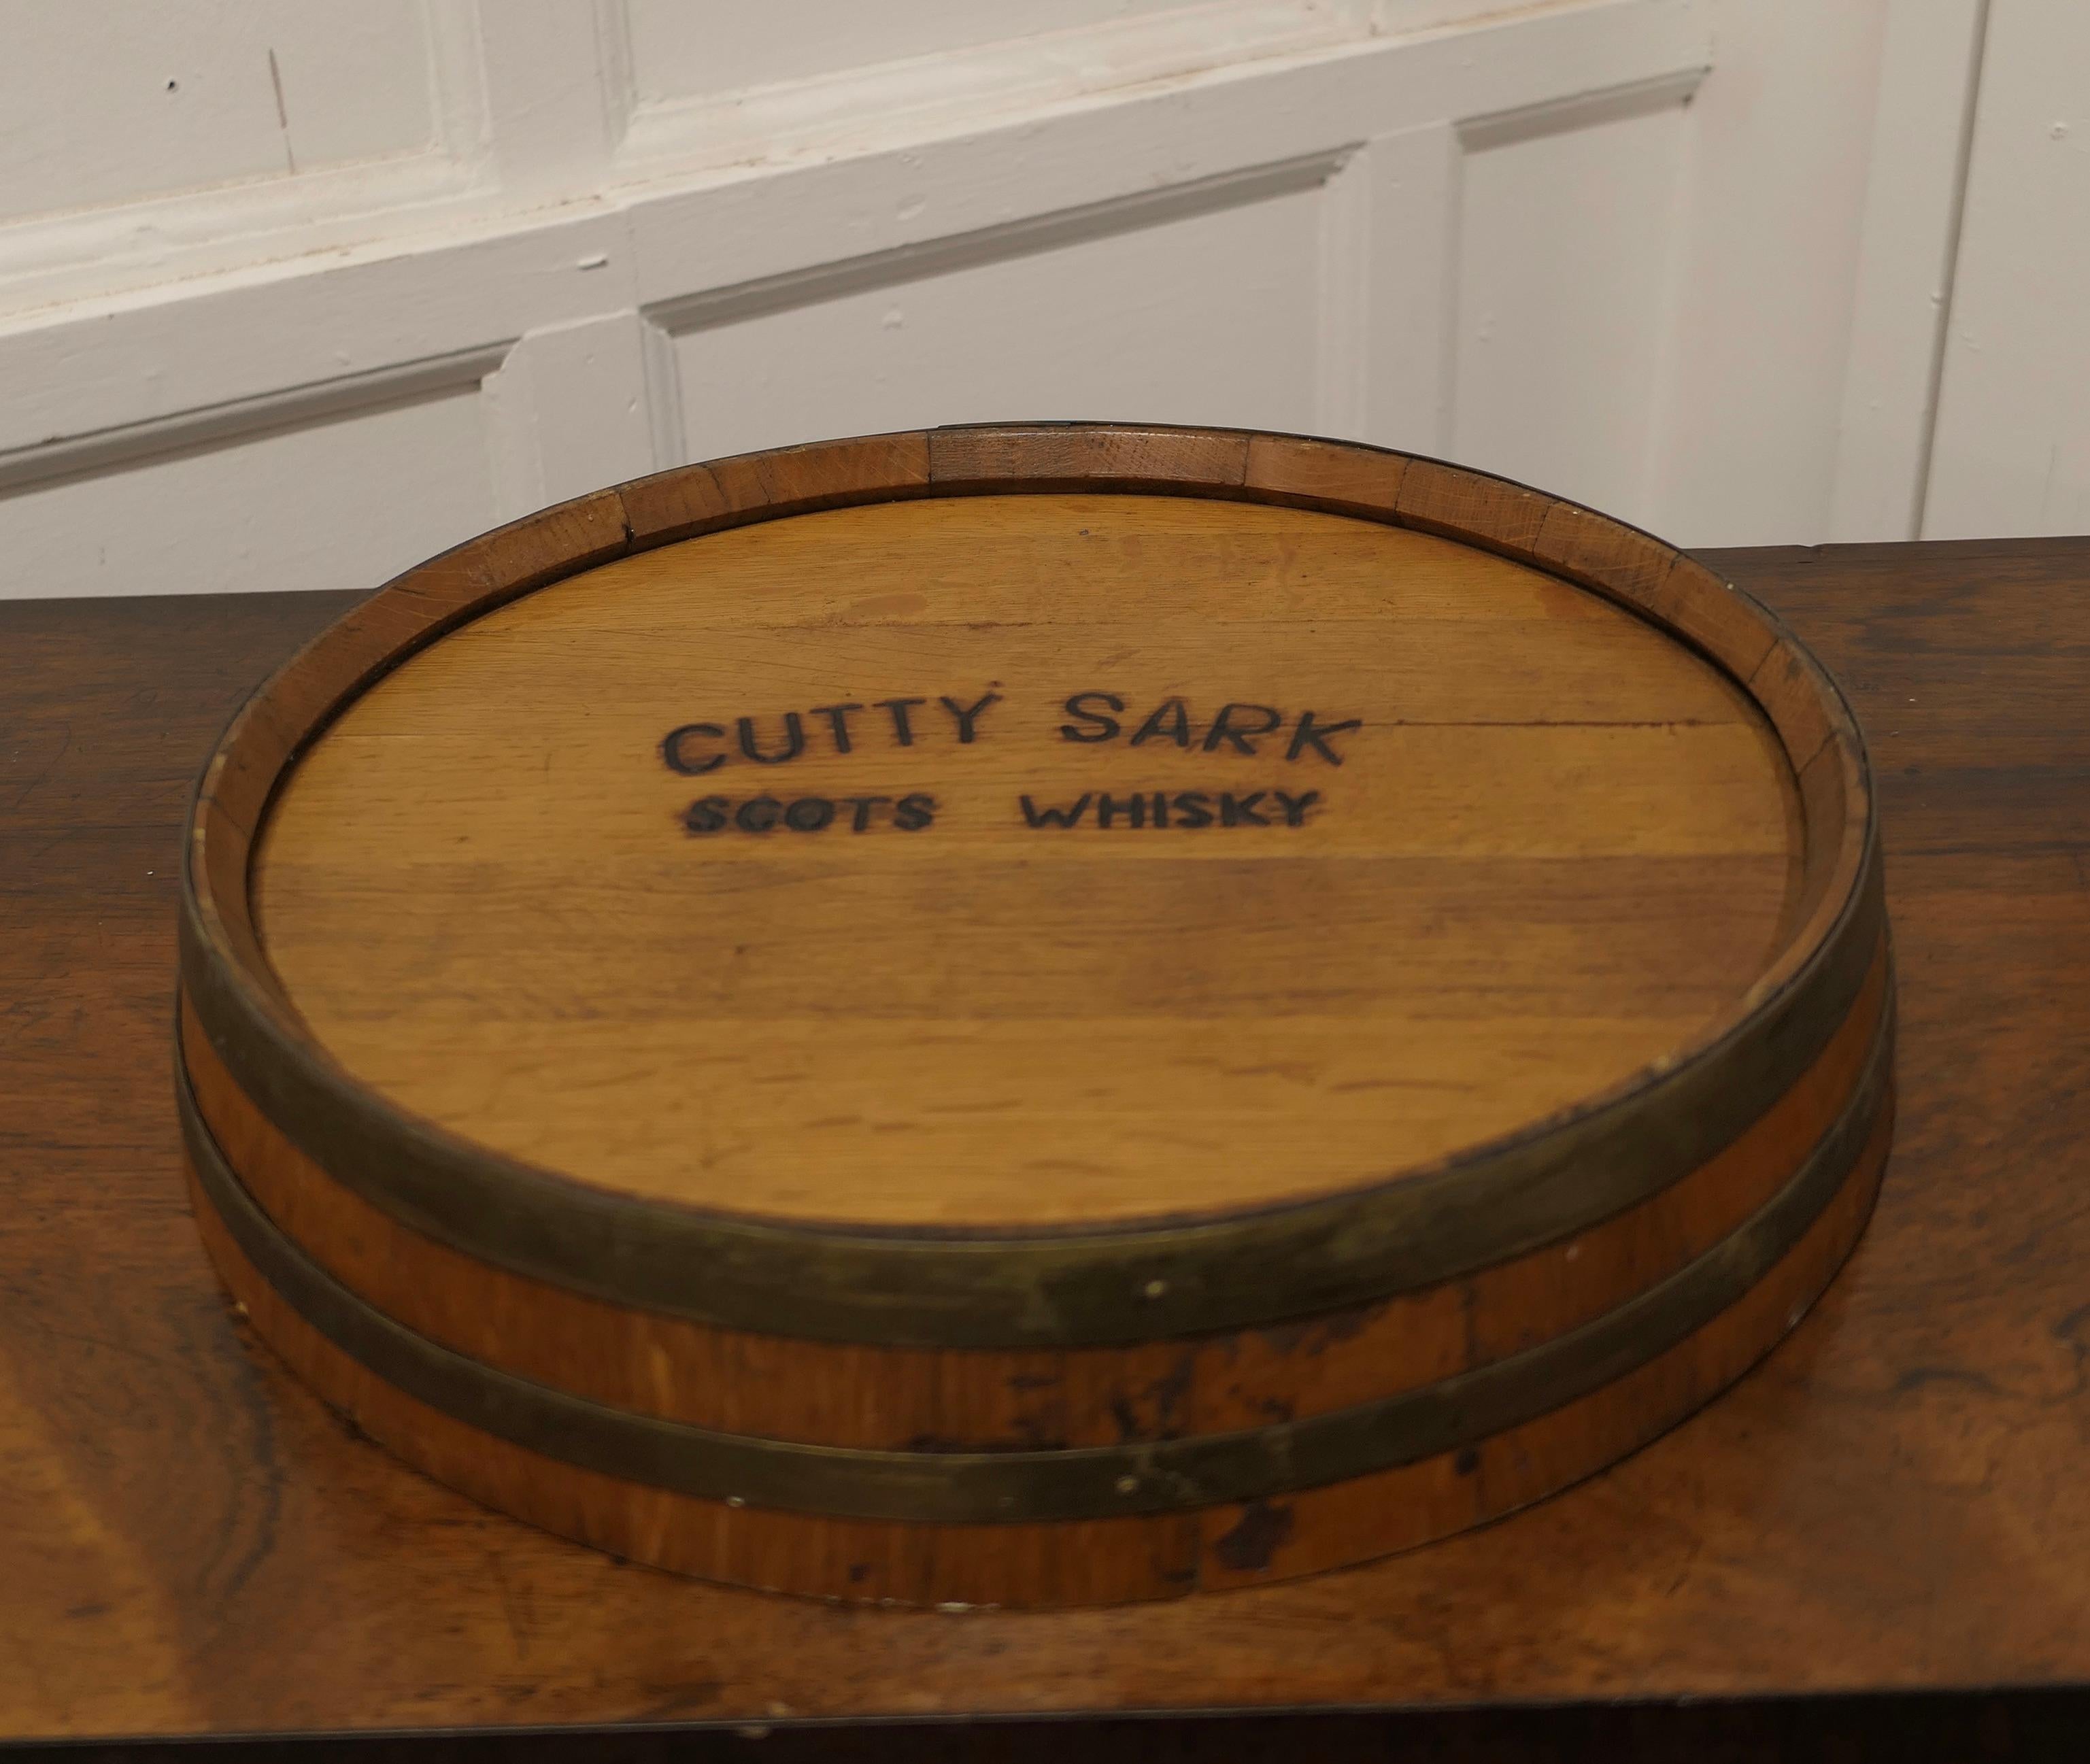 Cutty Cutty Sark Schottisches Whisky-Fass Oberschale

Ein gut aussehendes Stück, in goldener Eiche und Messing gebunden, dieses Fass Top-Tablett hätte Stolz auf die Bar, um einen Dram oder 2 servieren hatte  
Das Tablett hat Griffe und ist ein